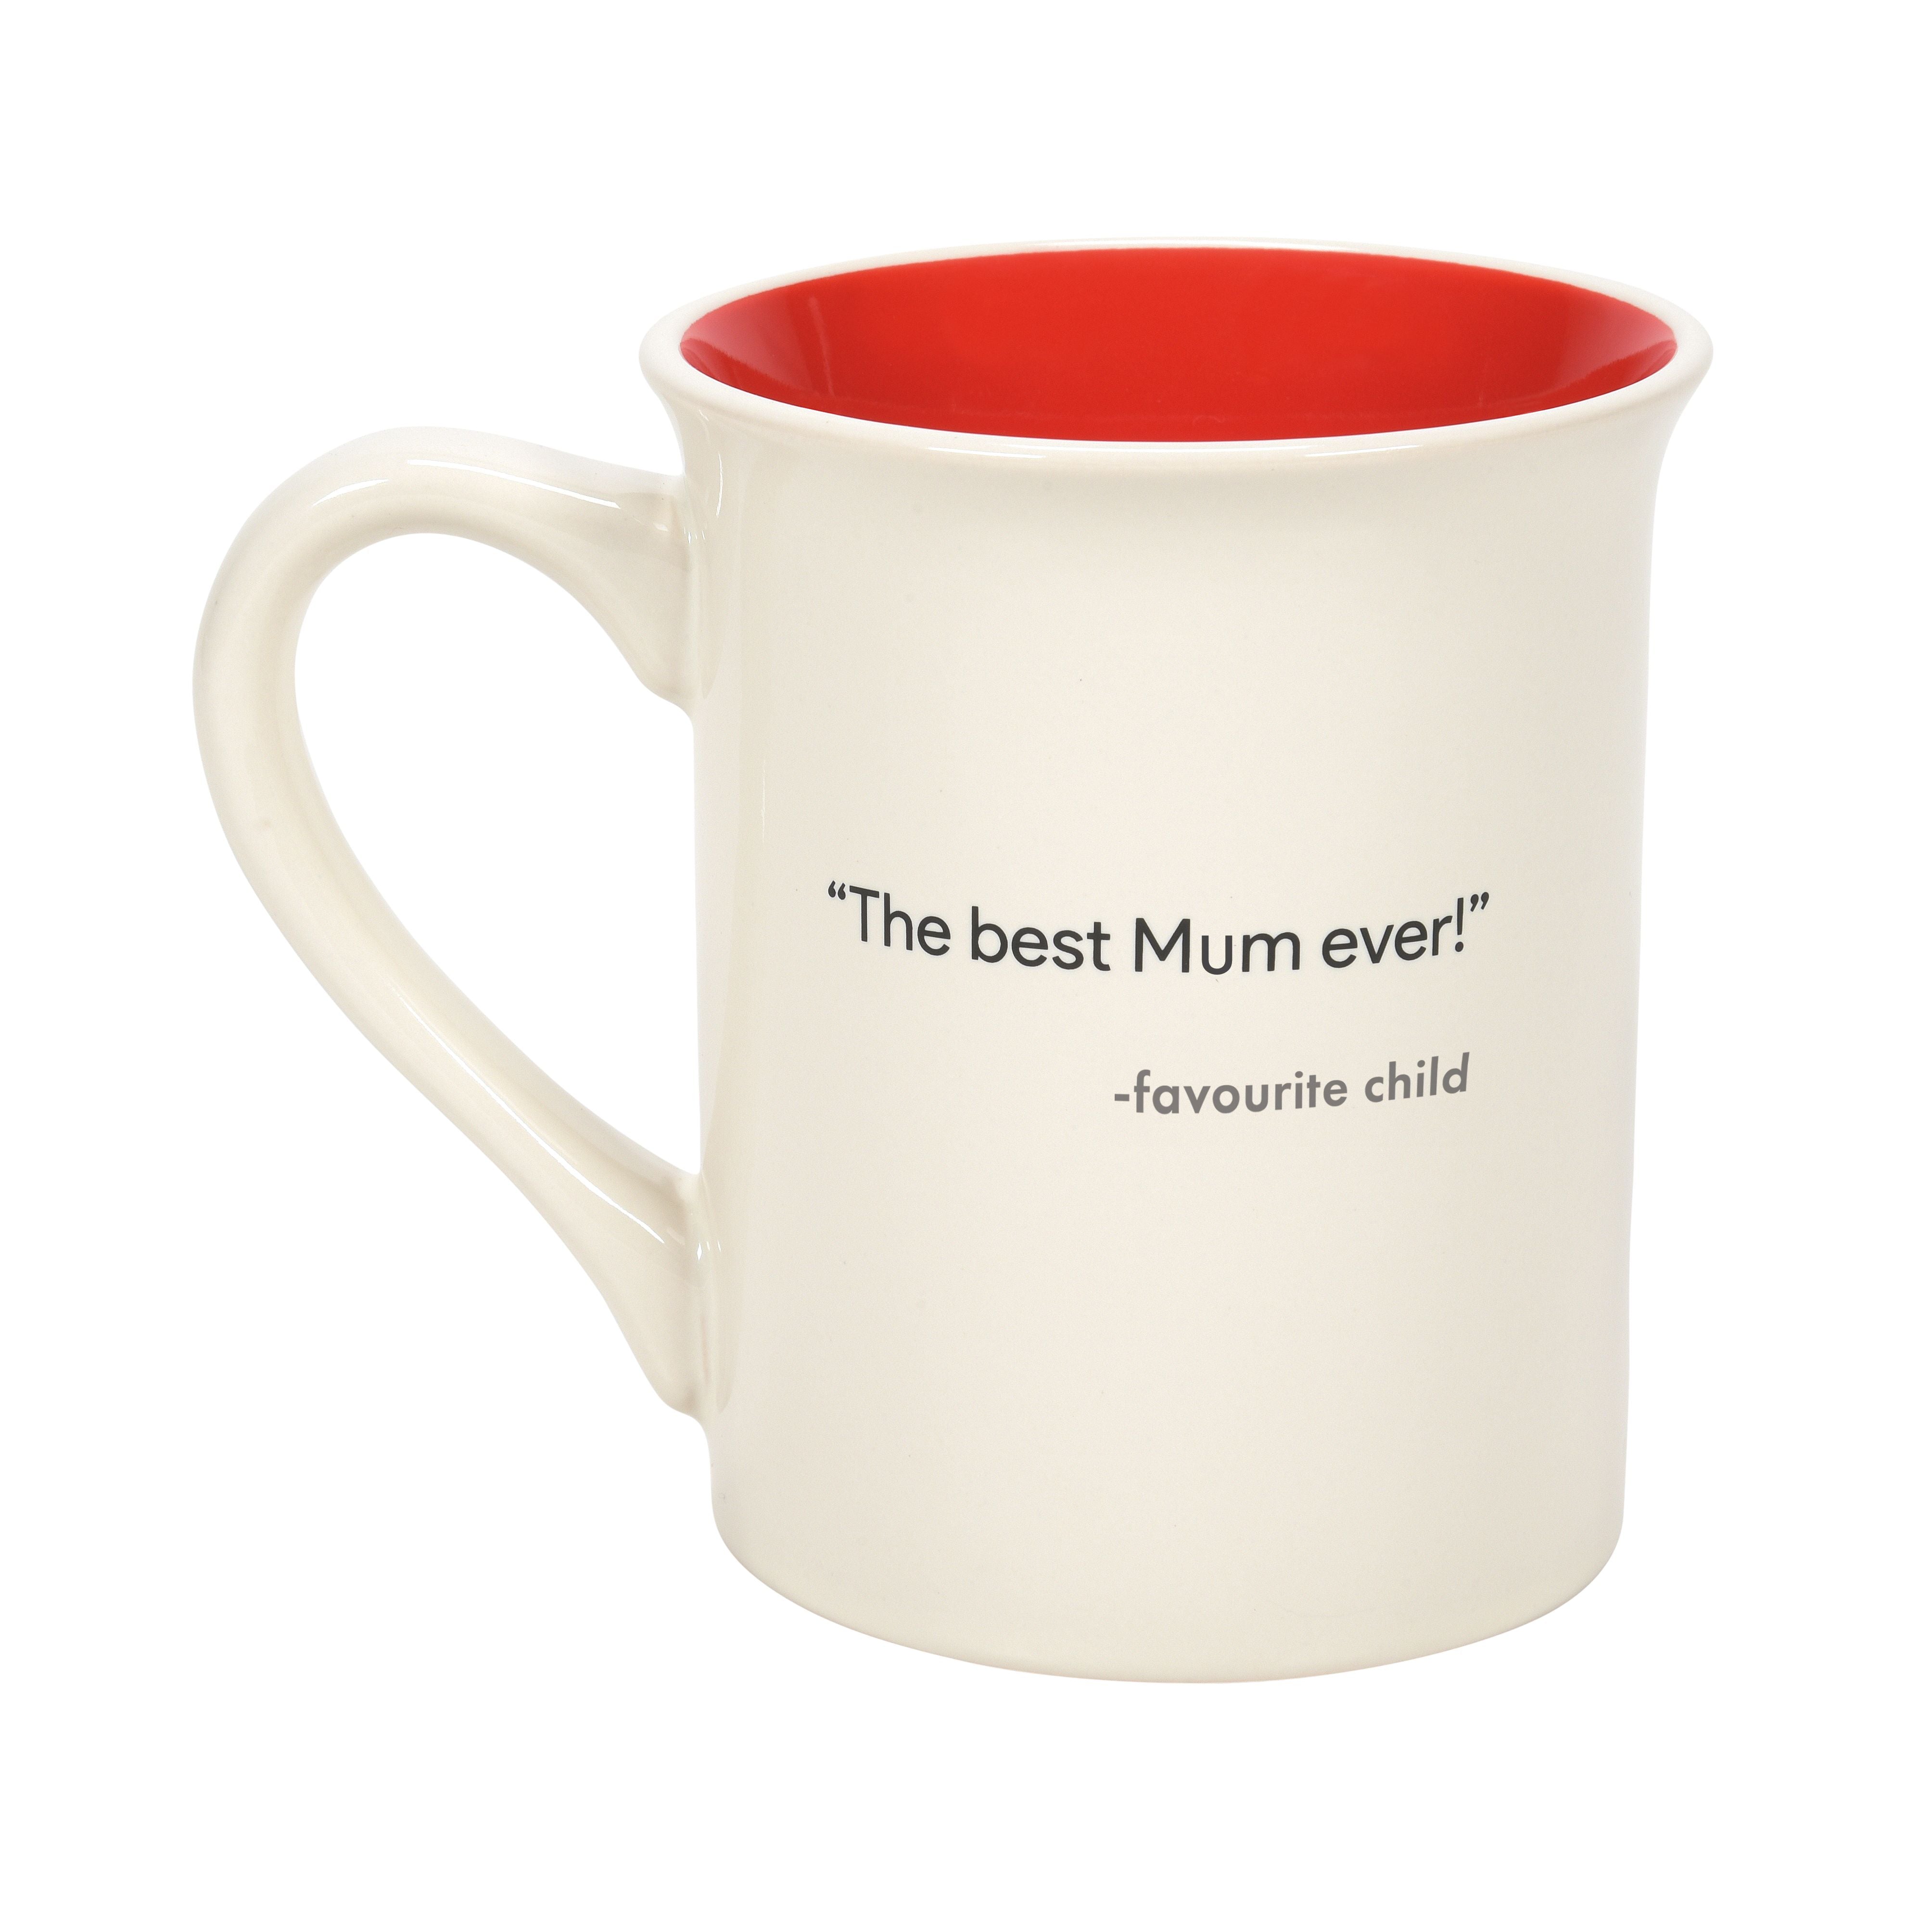 Five Star Mum Mug